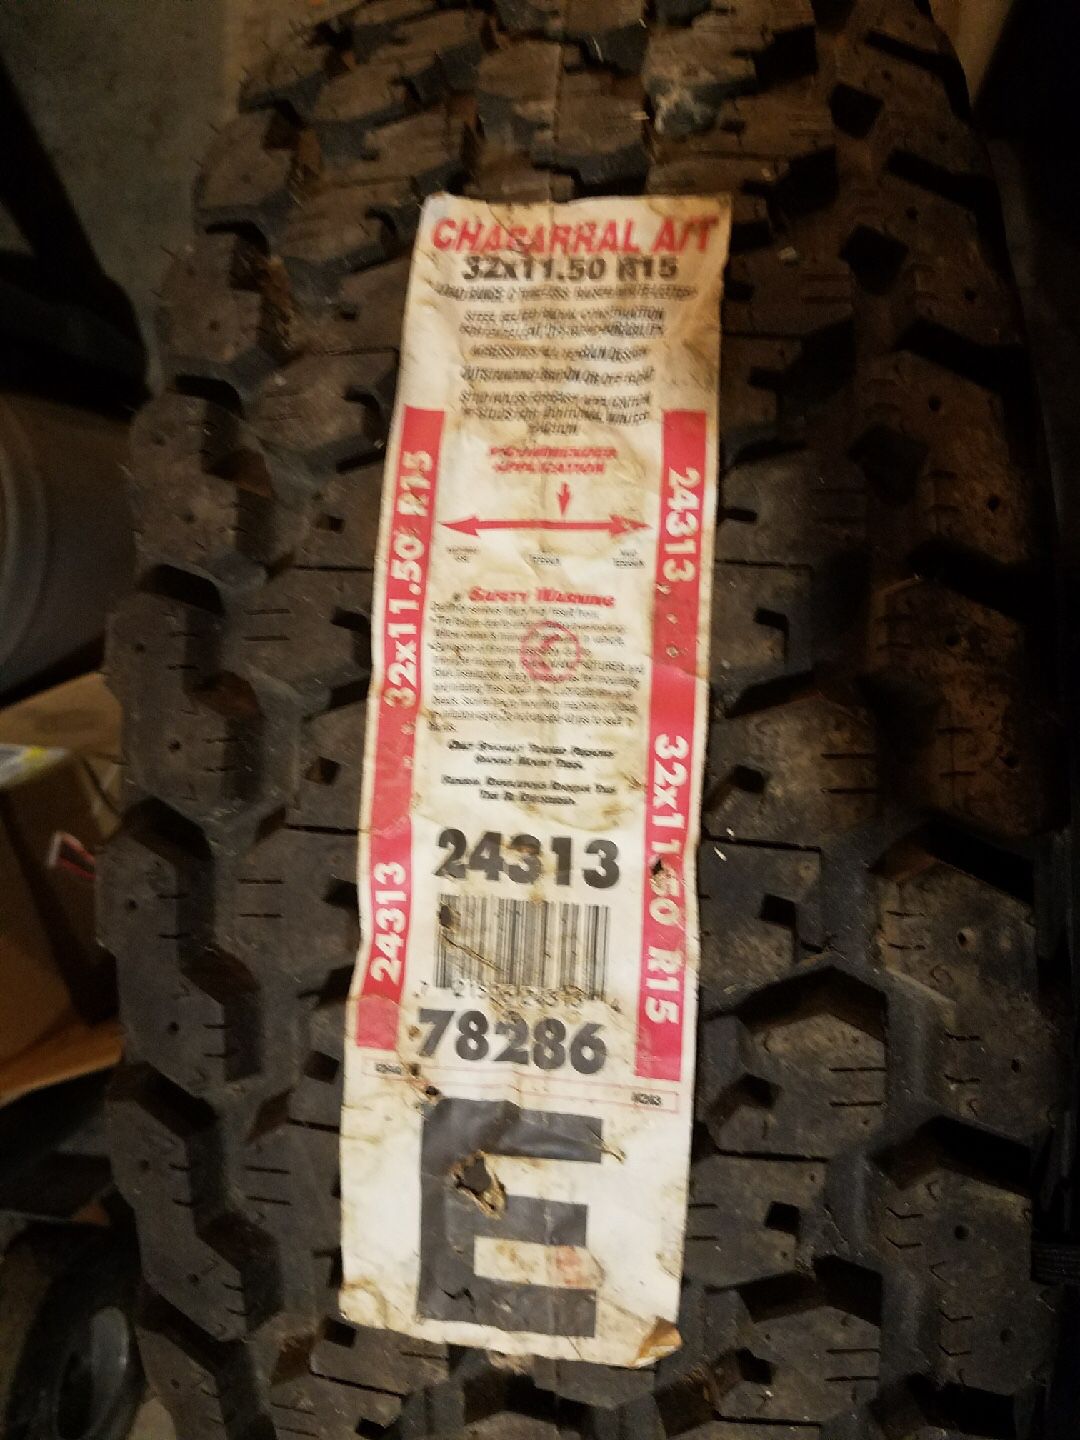 New tire size 32x11.50x15